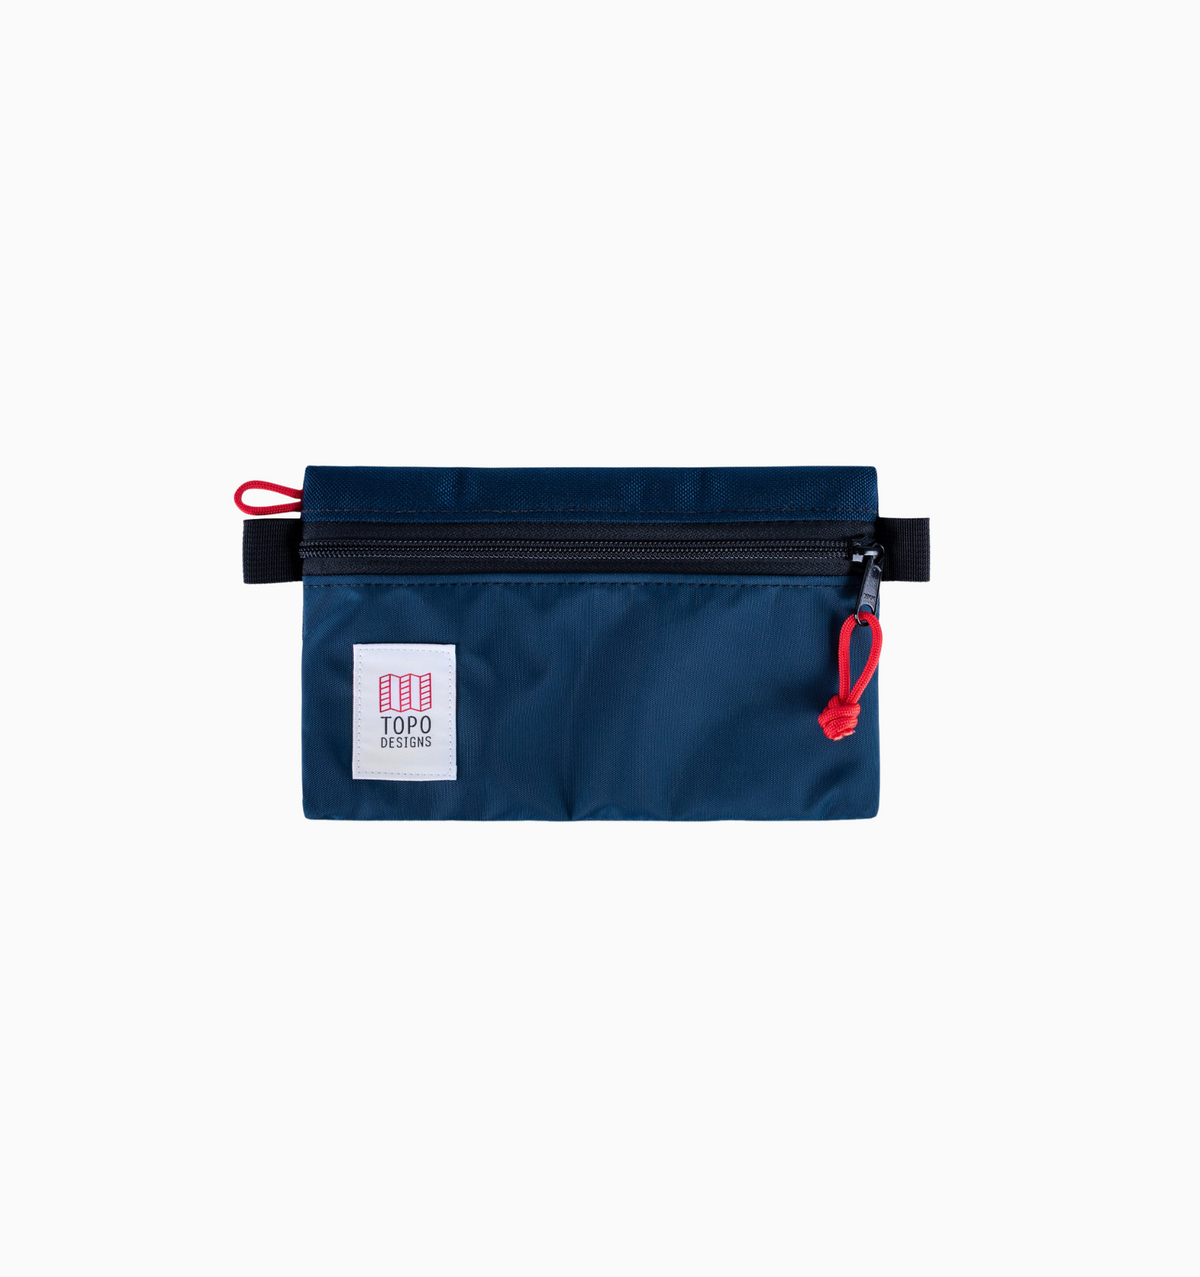 Topo Designs Small Accessory Bag - Navy